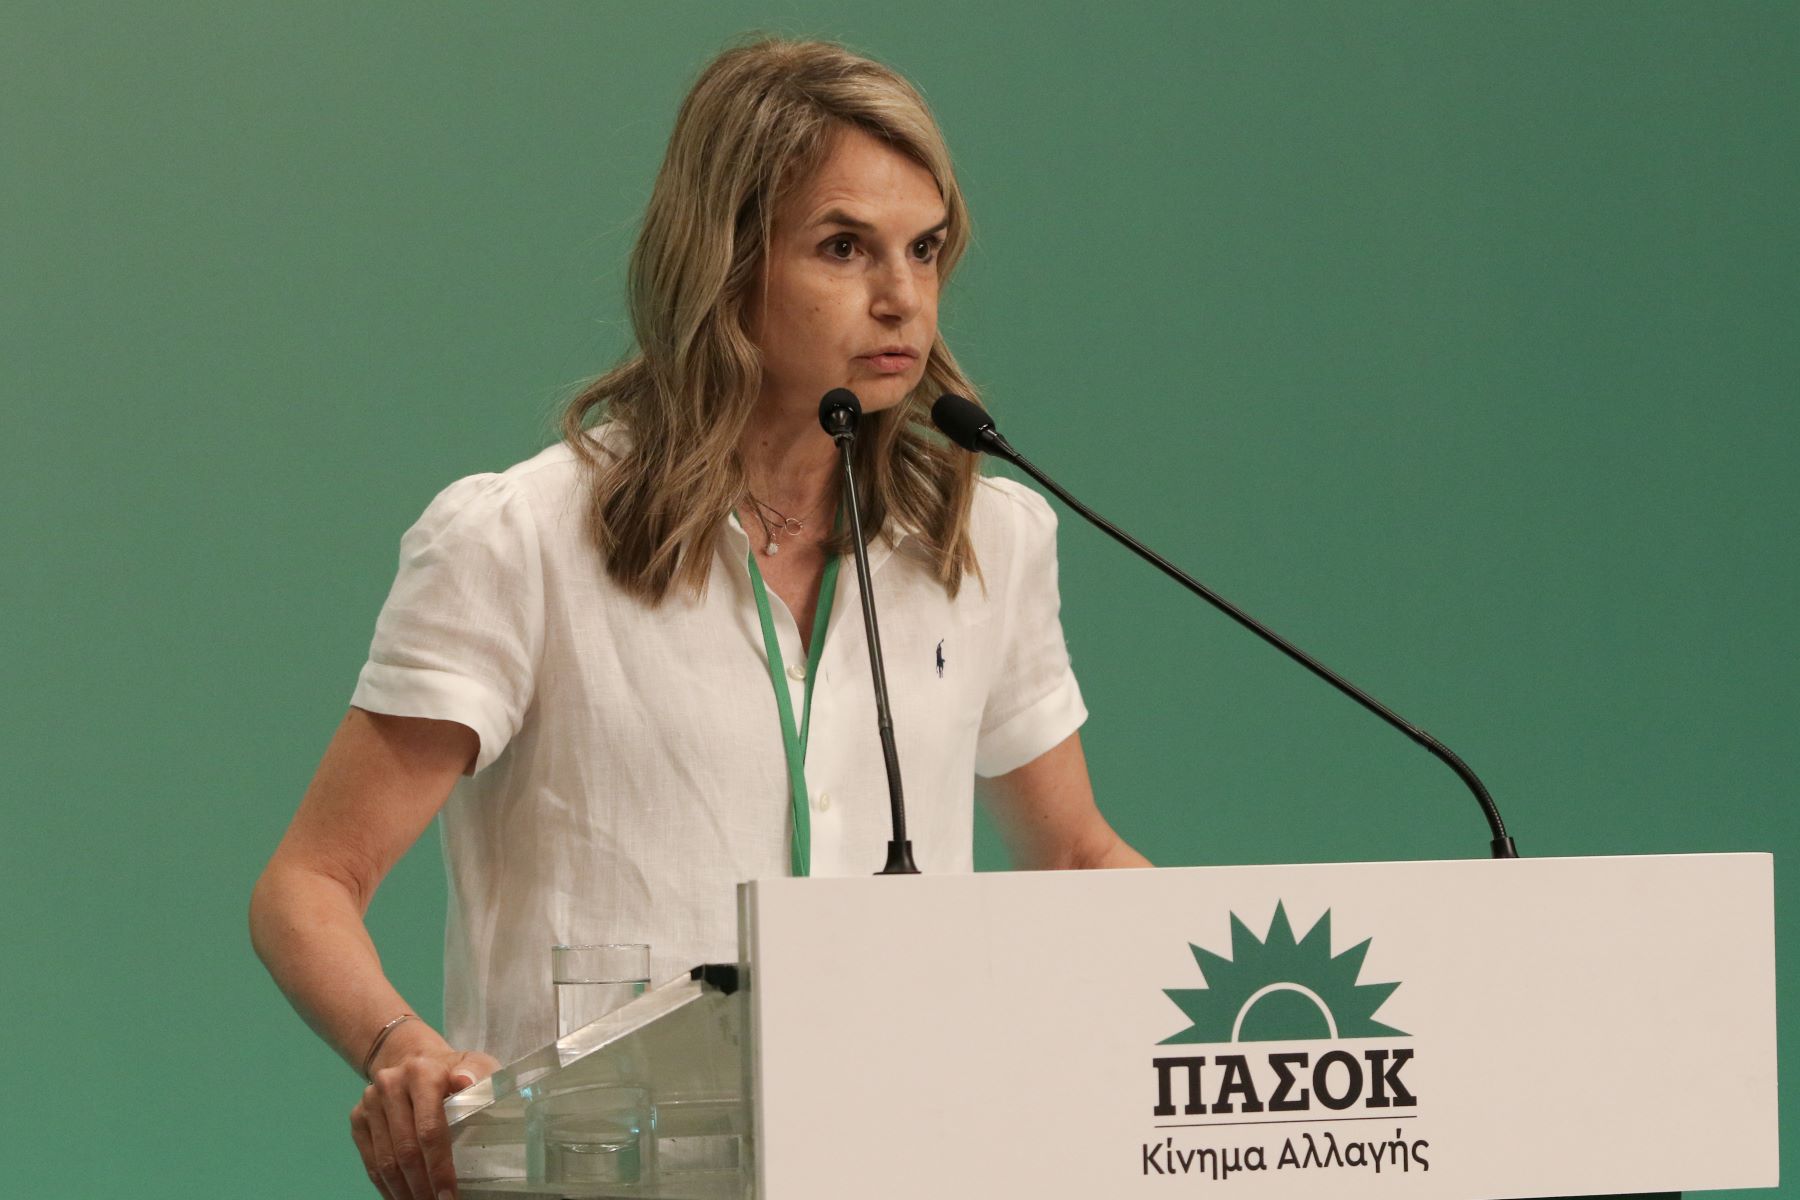 Μιλένα Αποστολάκη: «Η υποψηφιότητά μου έχει στόχο να εκφράσει το μαχητικό διεκδικητικό ΠΑΣΟΚ»